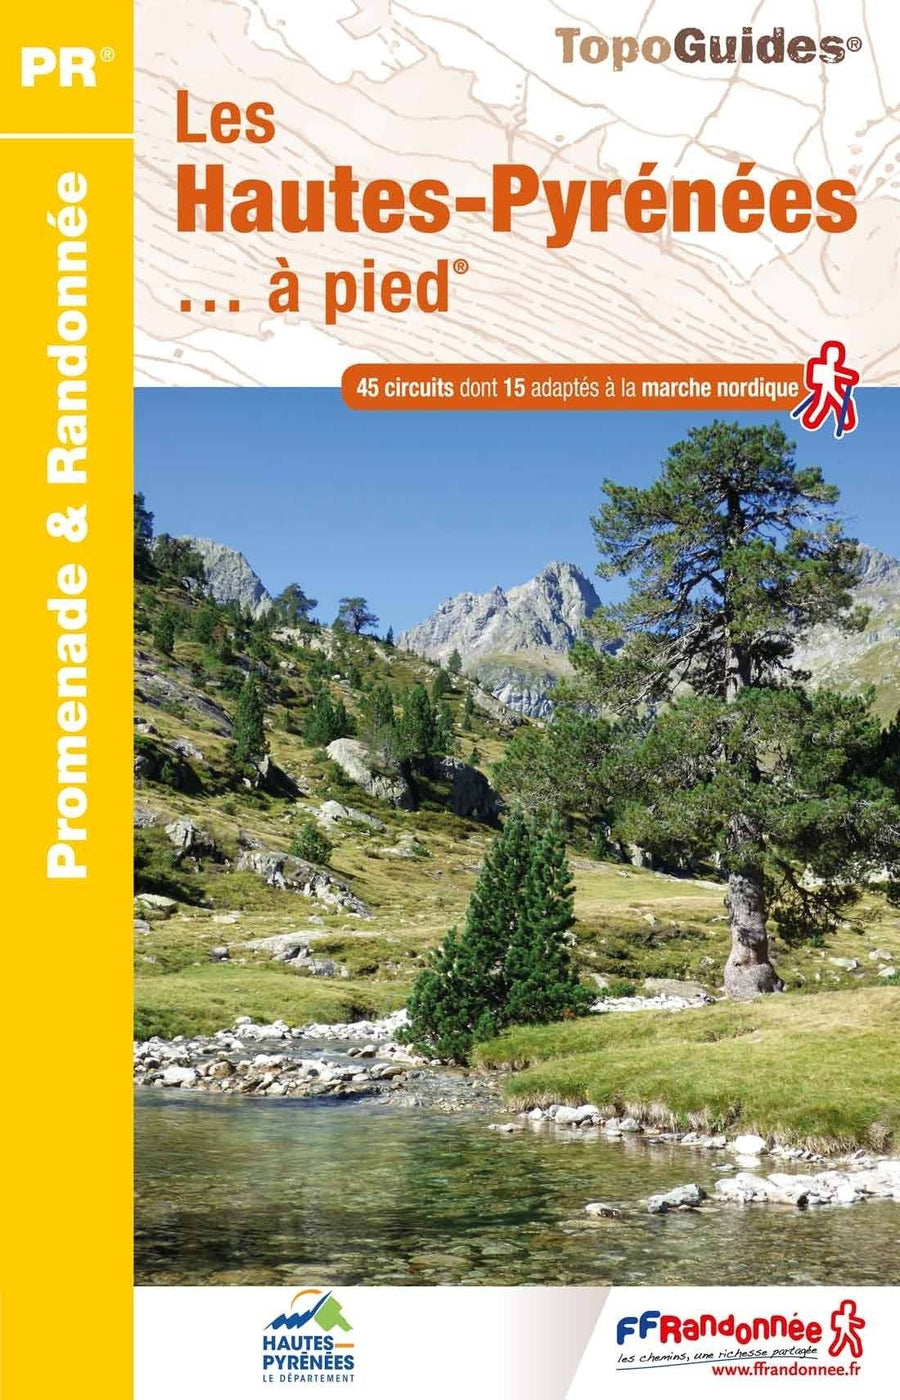 Topoguide de randonnée - Les Hautes-Pyrenées à pied | FFR guide de randonnée FFR - Fédération Française de Randonnée 